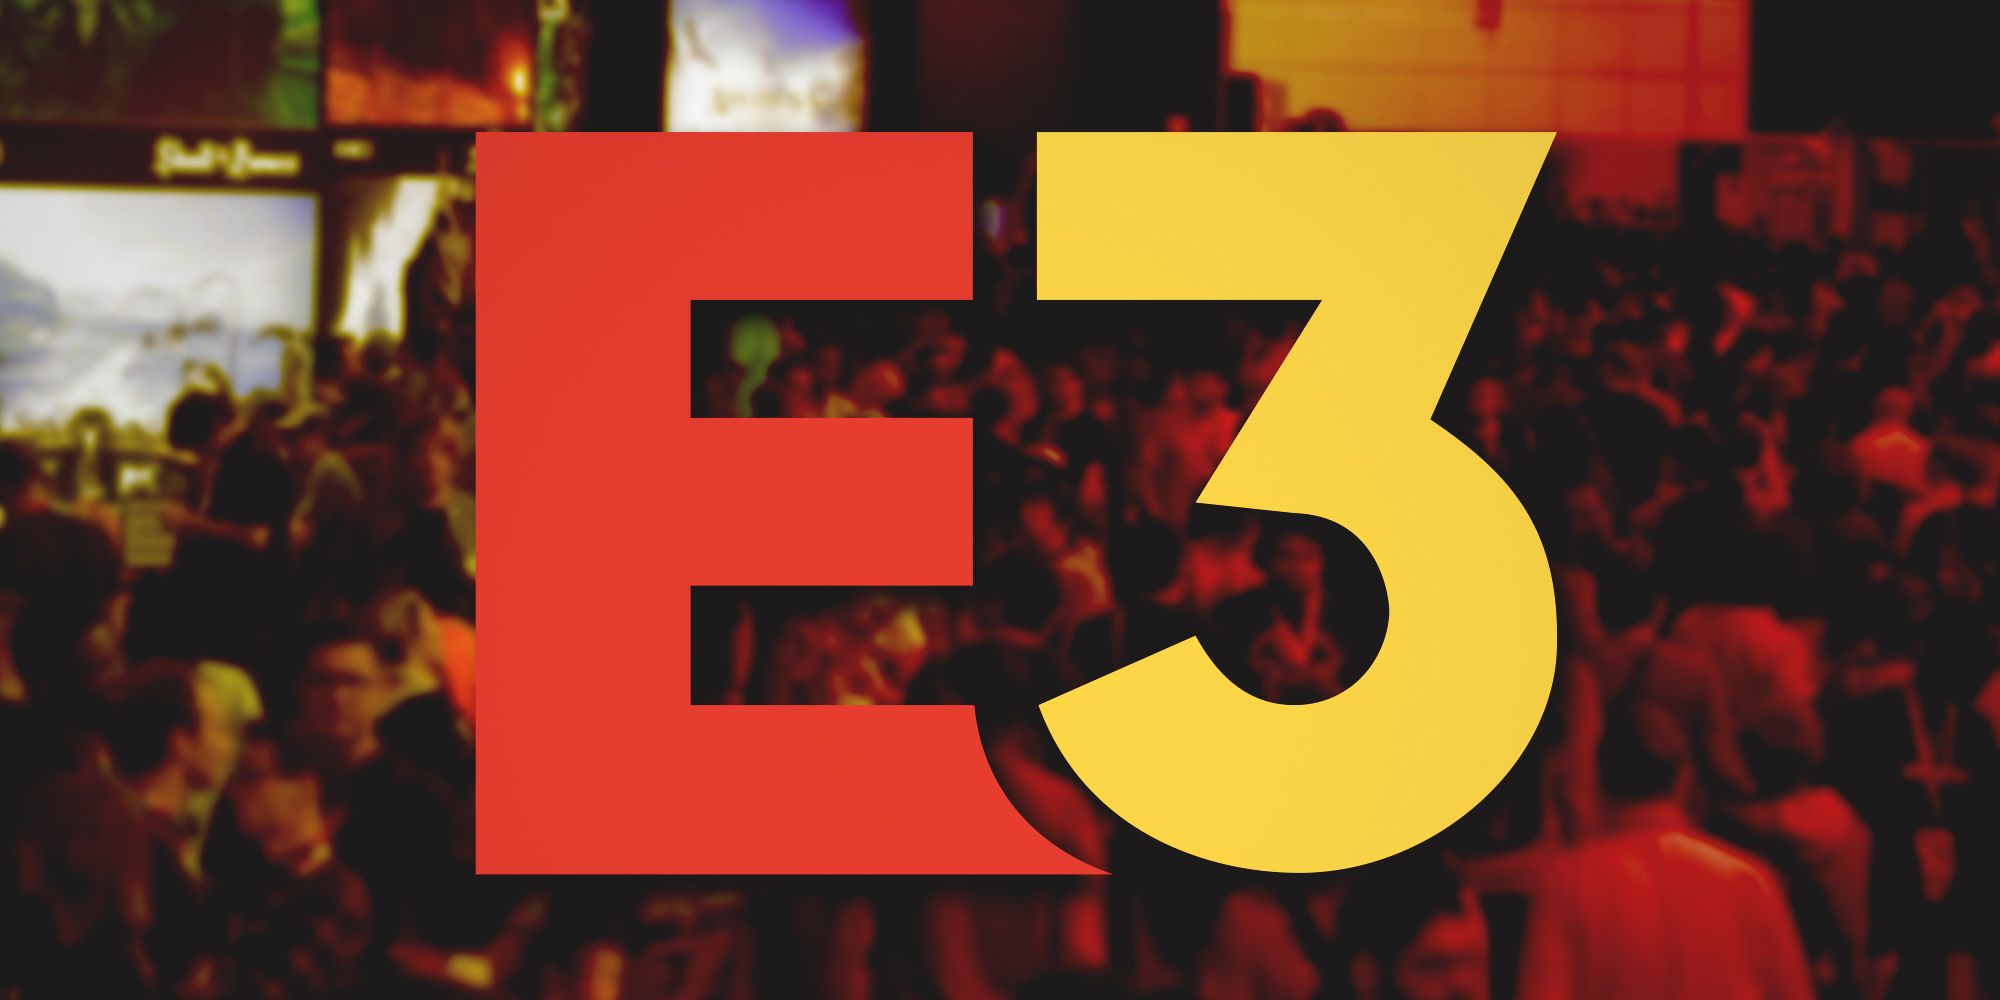 E3 Electronic Entertainment Expo logo over attendees